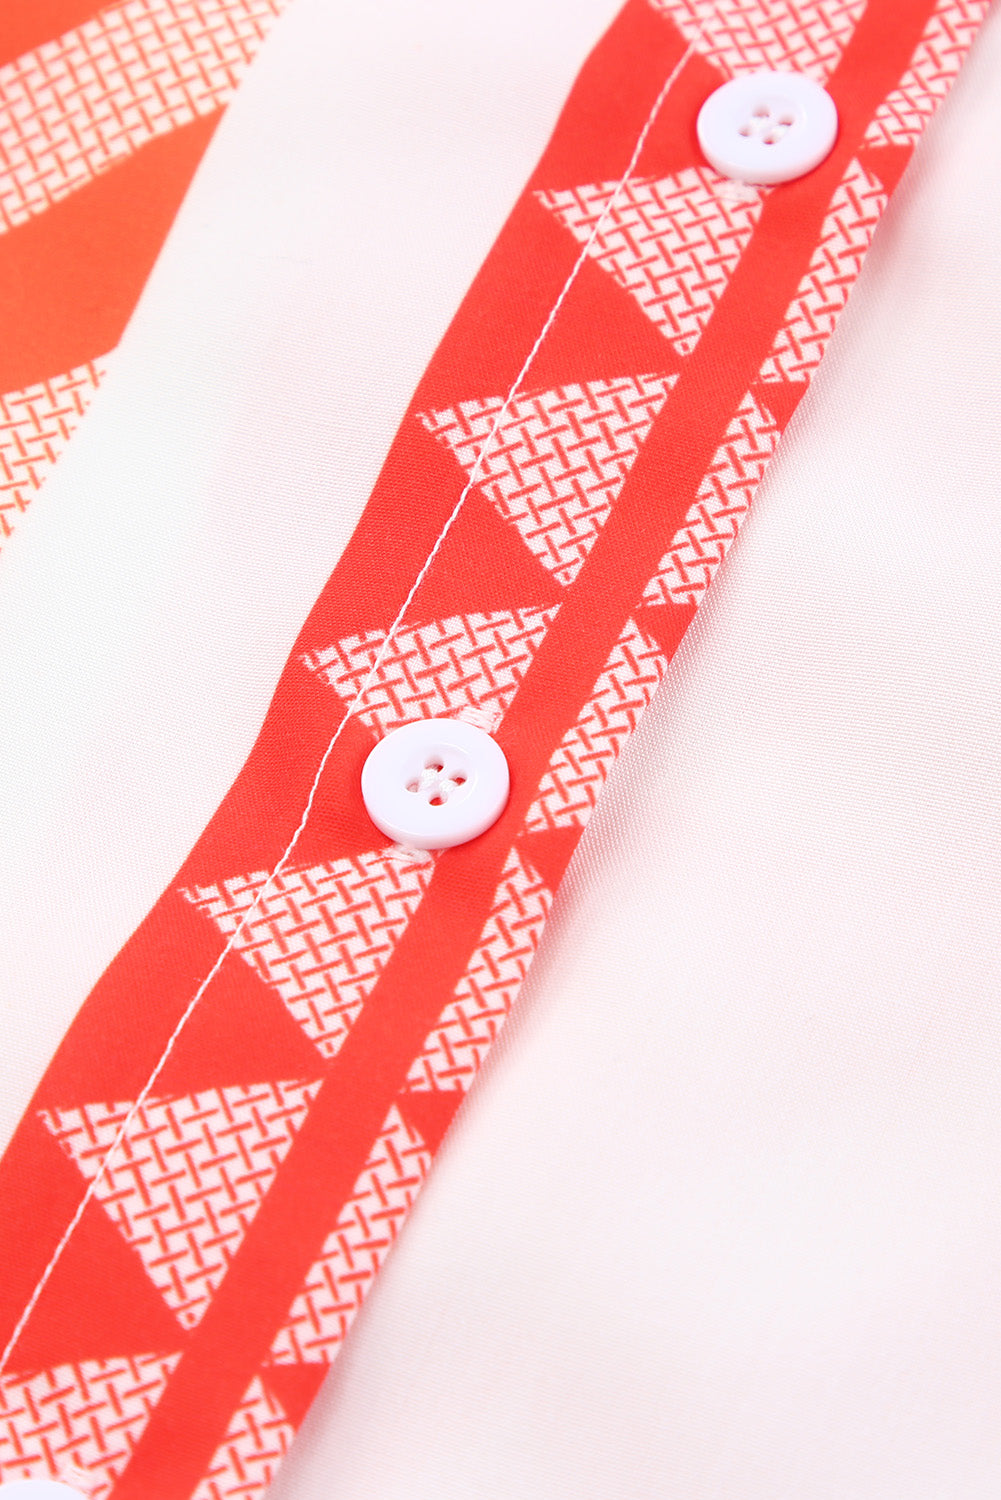 Camicia a maniche corte con bottoni a righe geometriche arancioni